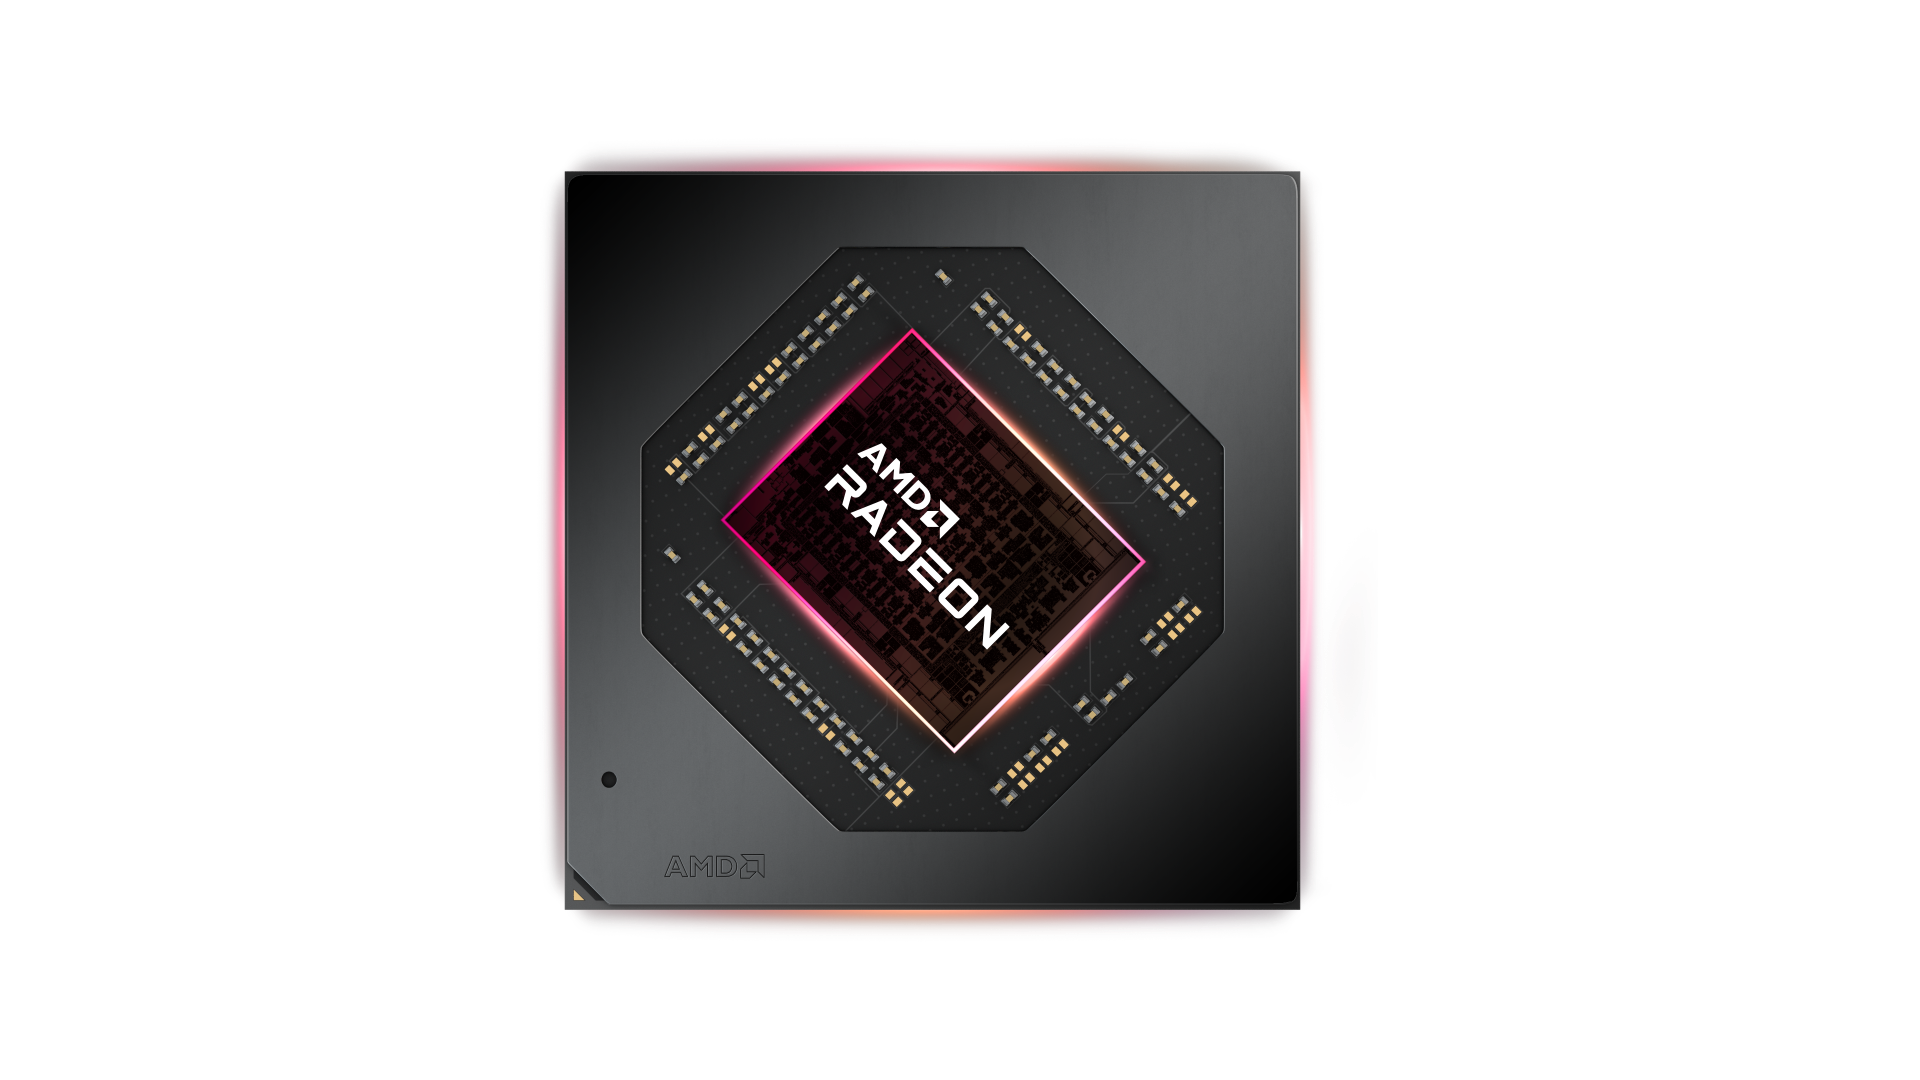 amd radeon rx 7000 series gpu for laptops “AMD CES 2023: ดร.ลิซ่า ซู ตอกย้ำถึงอนาคตเทคโนโลยีการประมวลผล + AMD ประกาศเปิดตัวผลิตภัณฑ์บนแล็ปท็อปและเดสก์ท็อปคอมพิวเตอร์หลายสิบรายการ” 